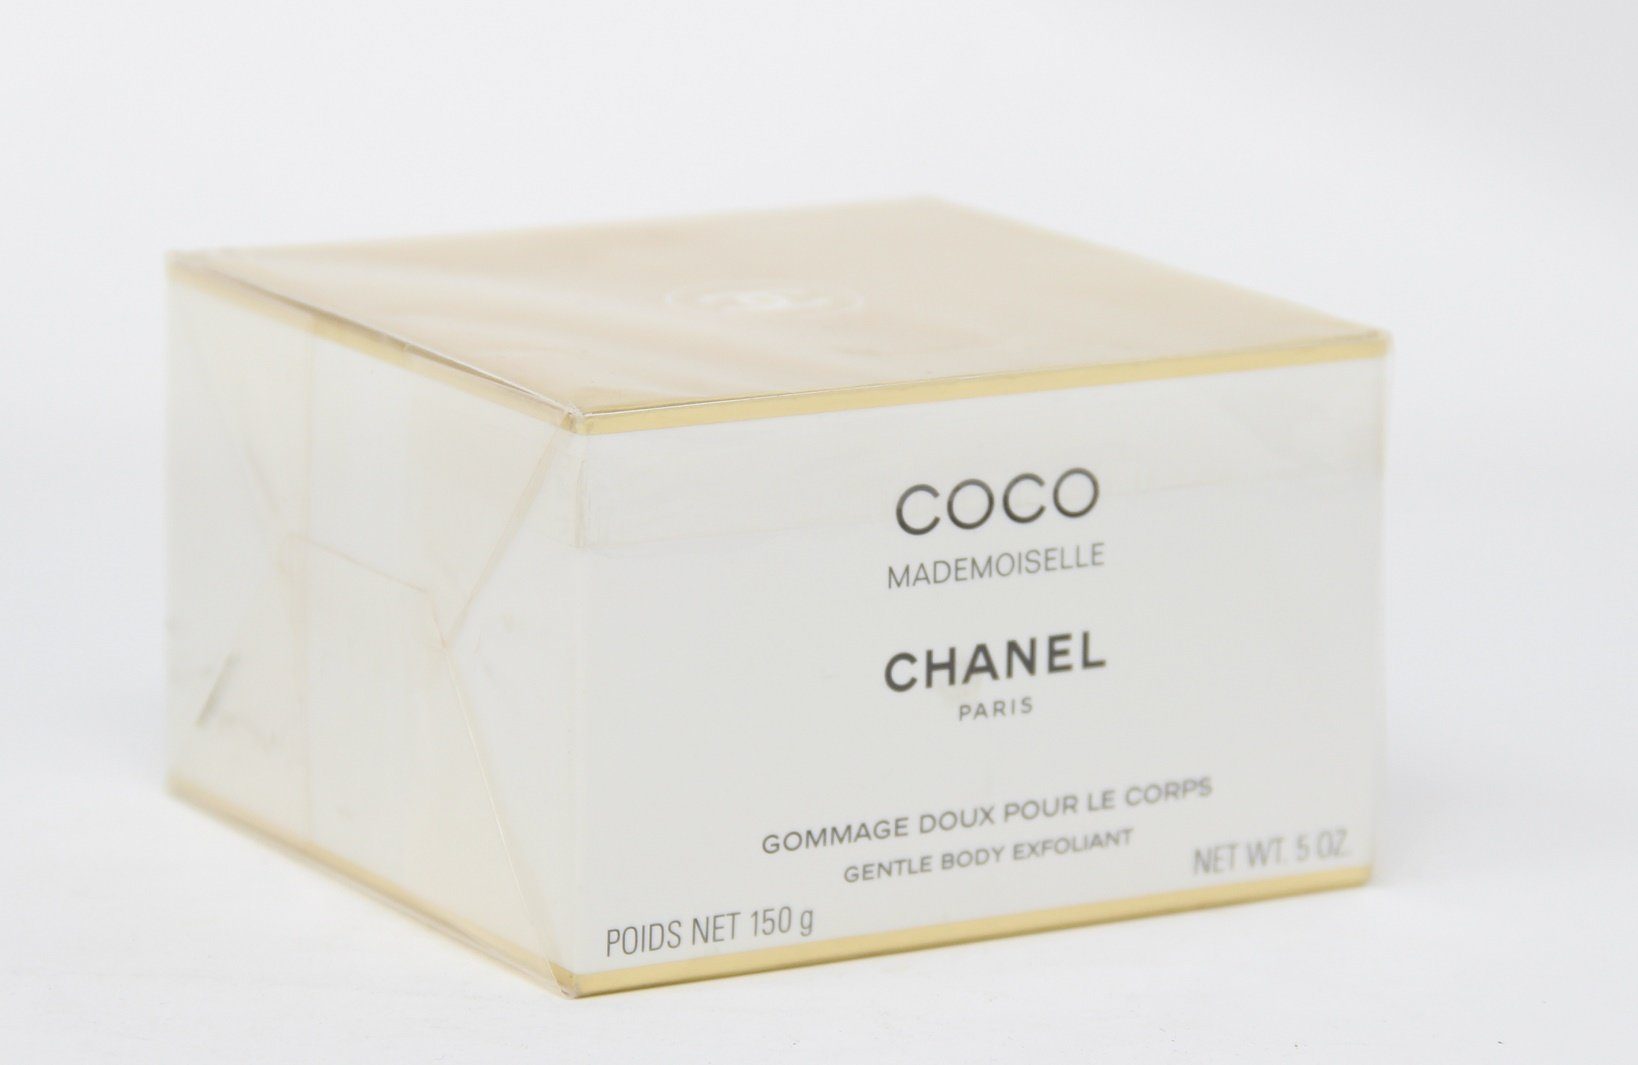 CHANEL Körperpflegeduft Chanel Coco Mademoiselle Gentle Body